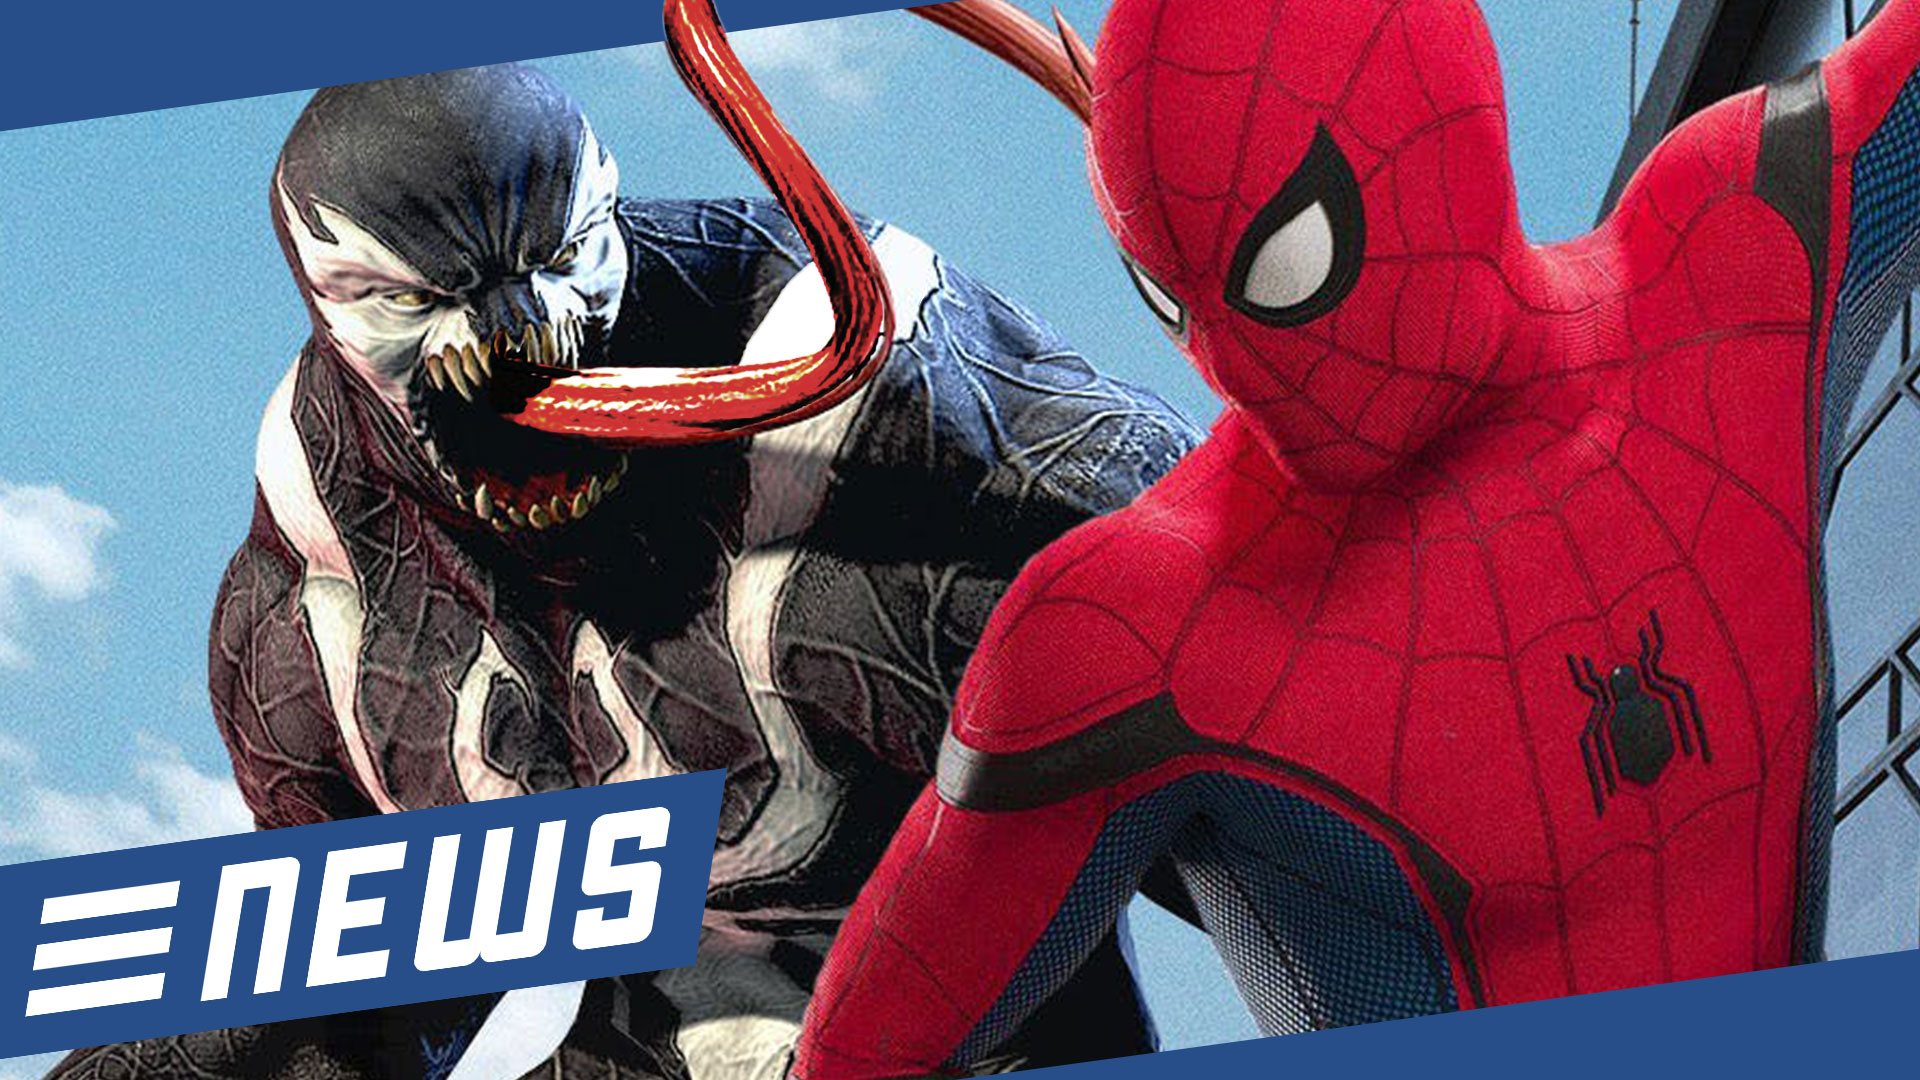 Spider-Man jetzt doch im Venom-Film? - FLIPPS News vom 21.01.2018